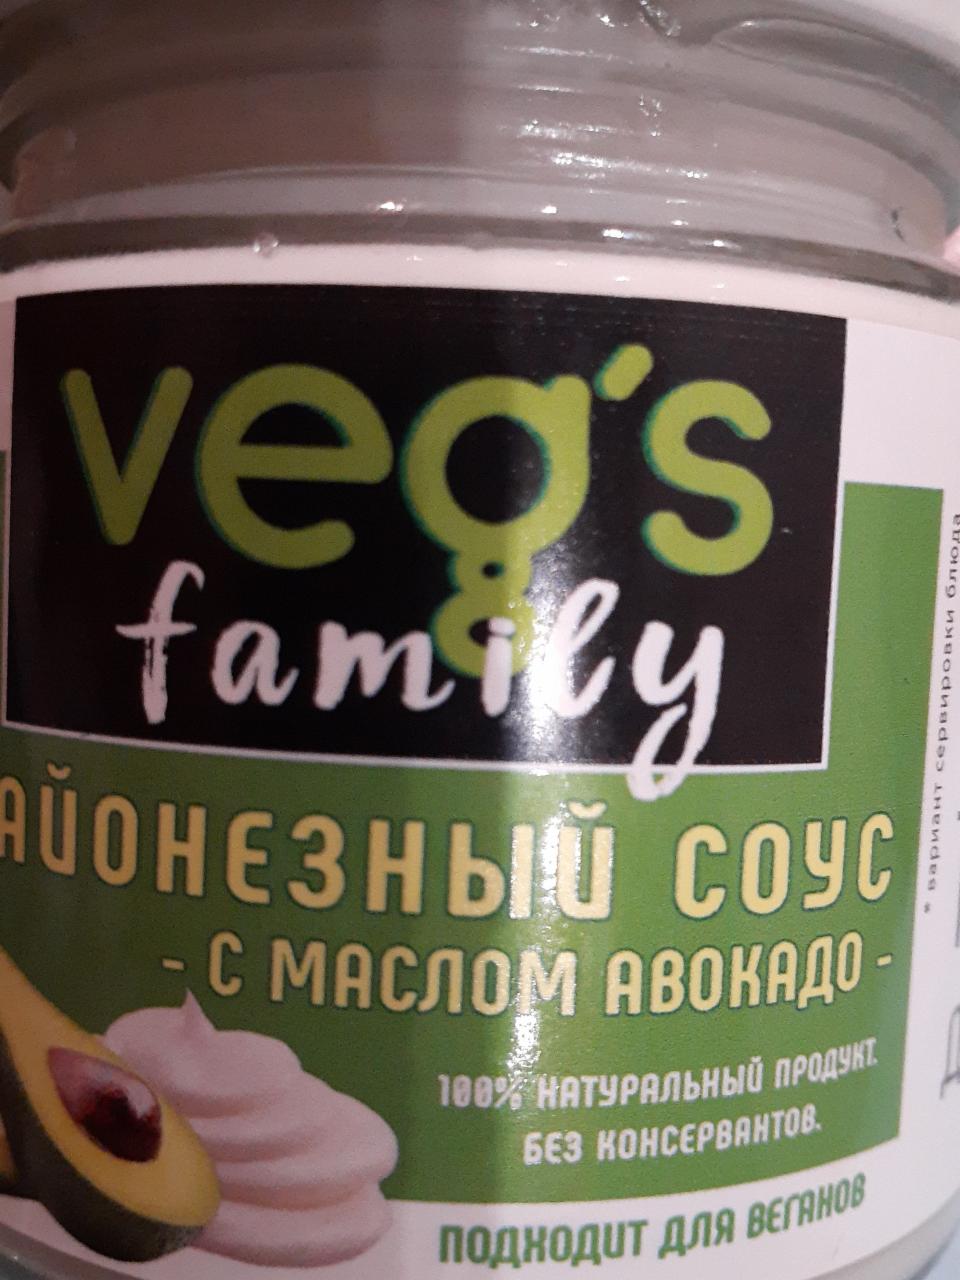 Фото - майонезный соус с маслом авокадо Veg's family